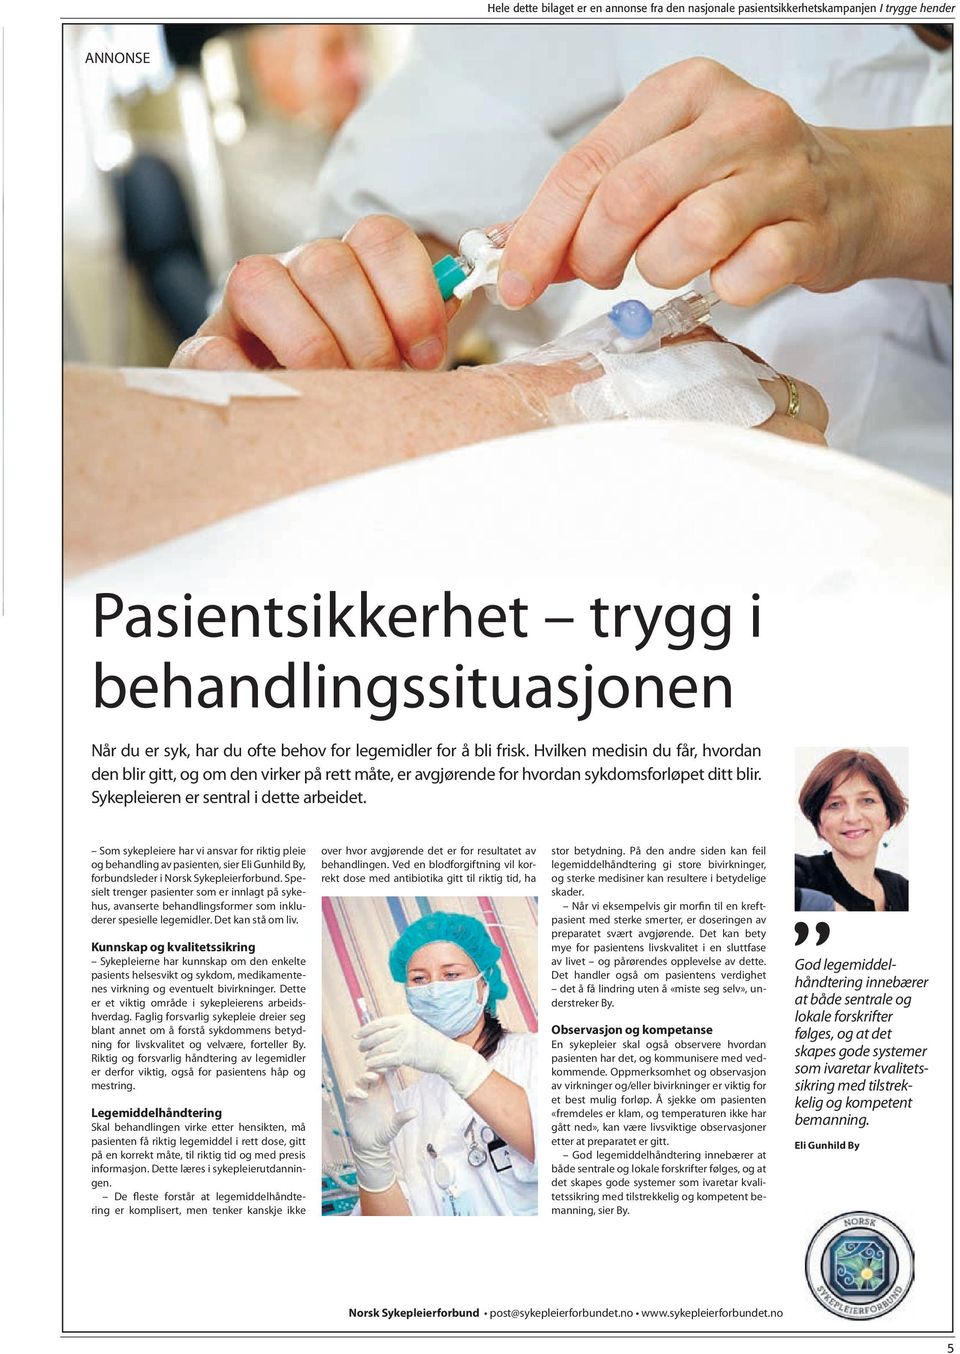 Som sykepleiere har vi ansvar for riktig pleie og behandling av pasienten, sier Eli Gunhild By, forbundsleder i Norsk Sykepleierforbund.